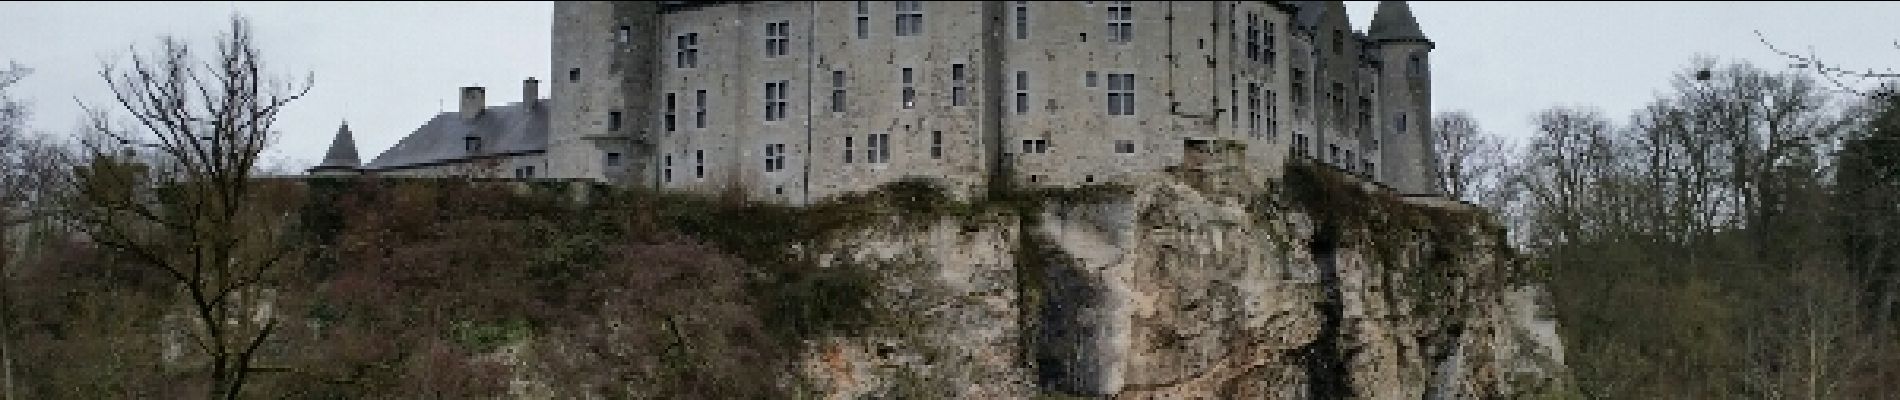 Point of interest Dinant - Château de Walzin - Photo